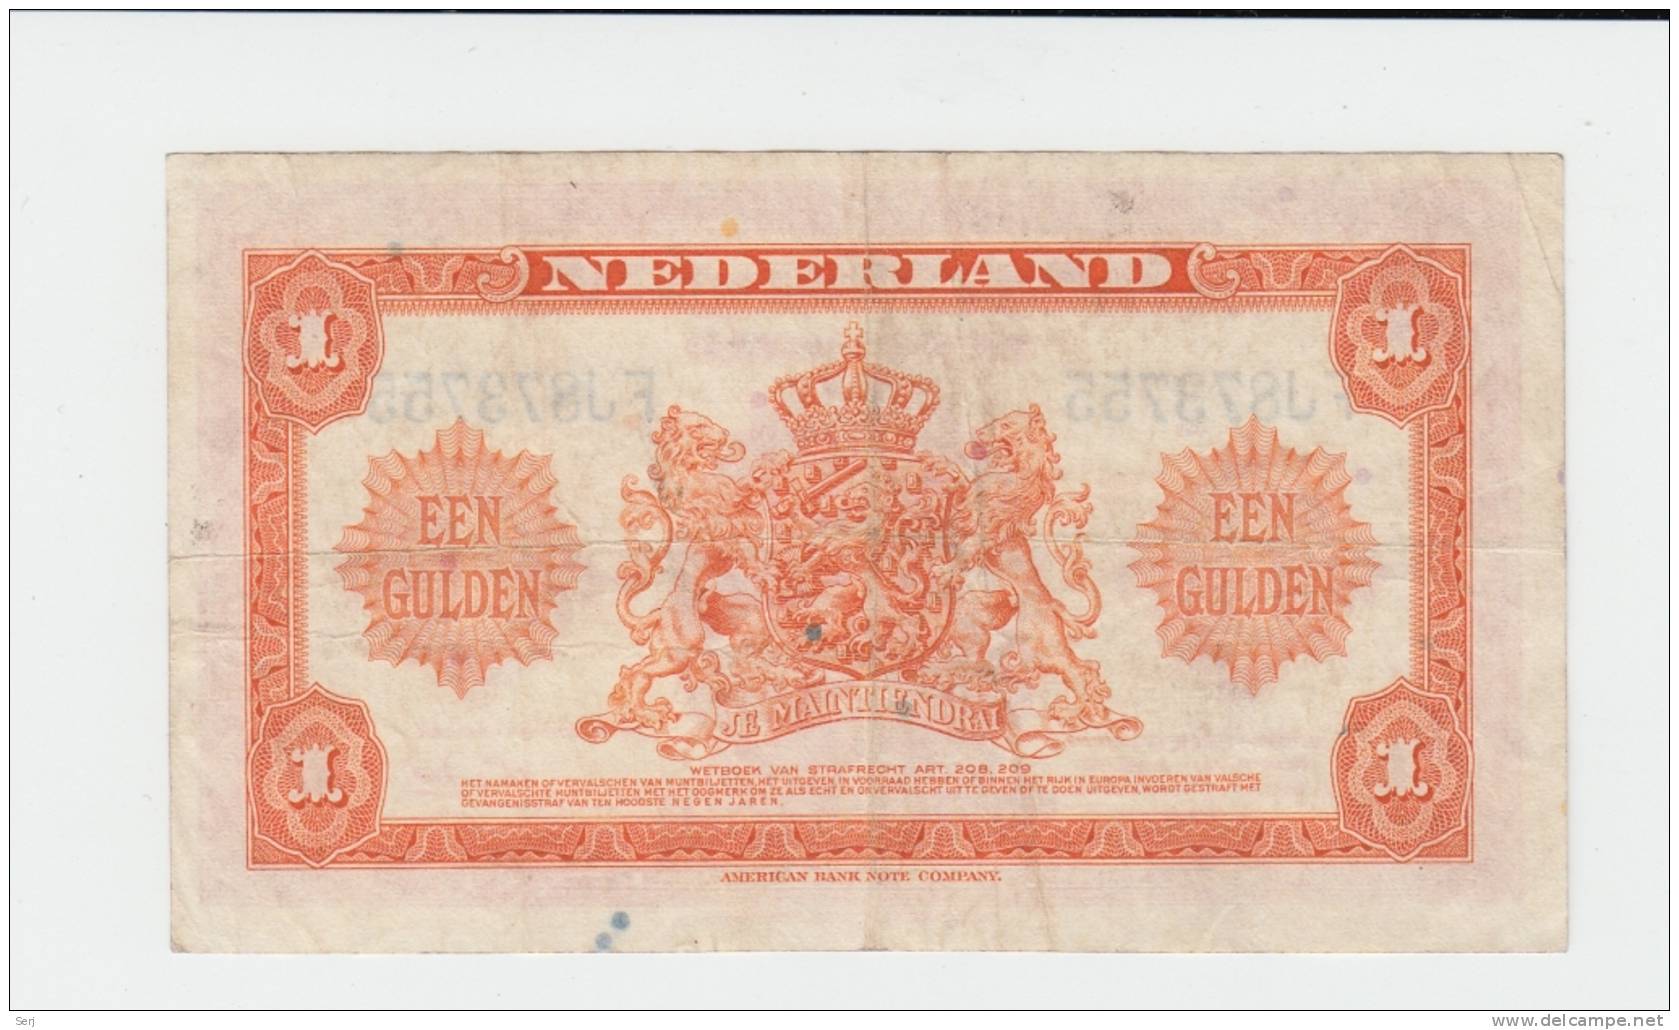 Netherlands 1 Gulden 1943 VF P 64 - 1 Gulde